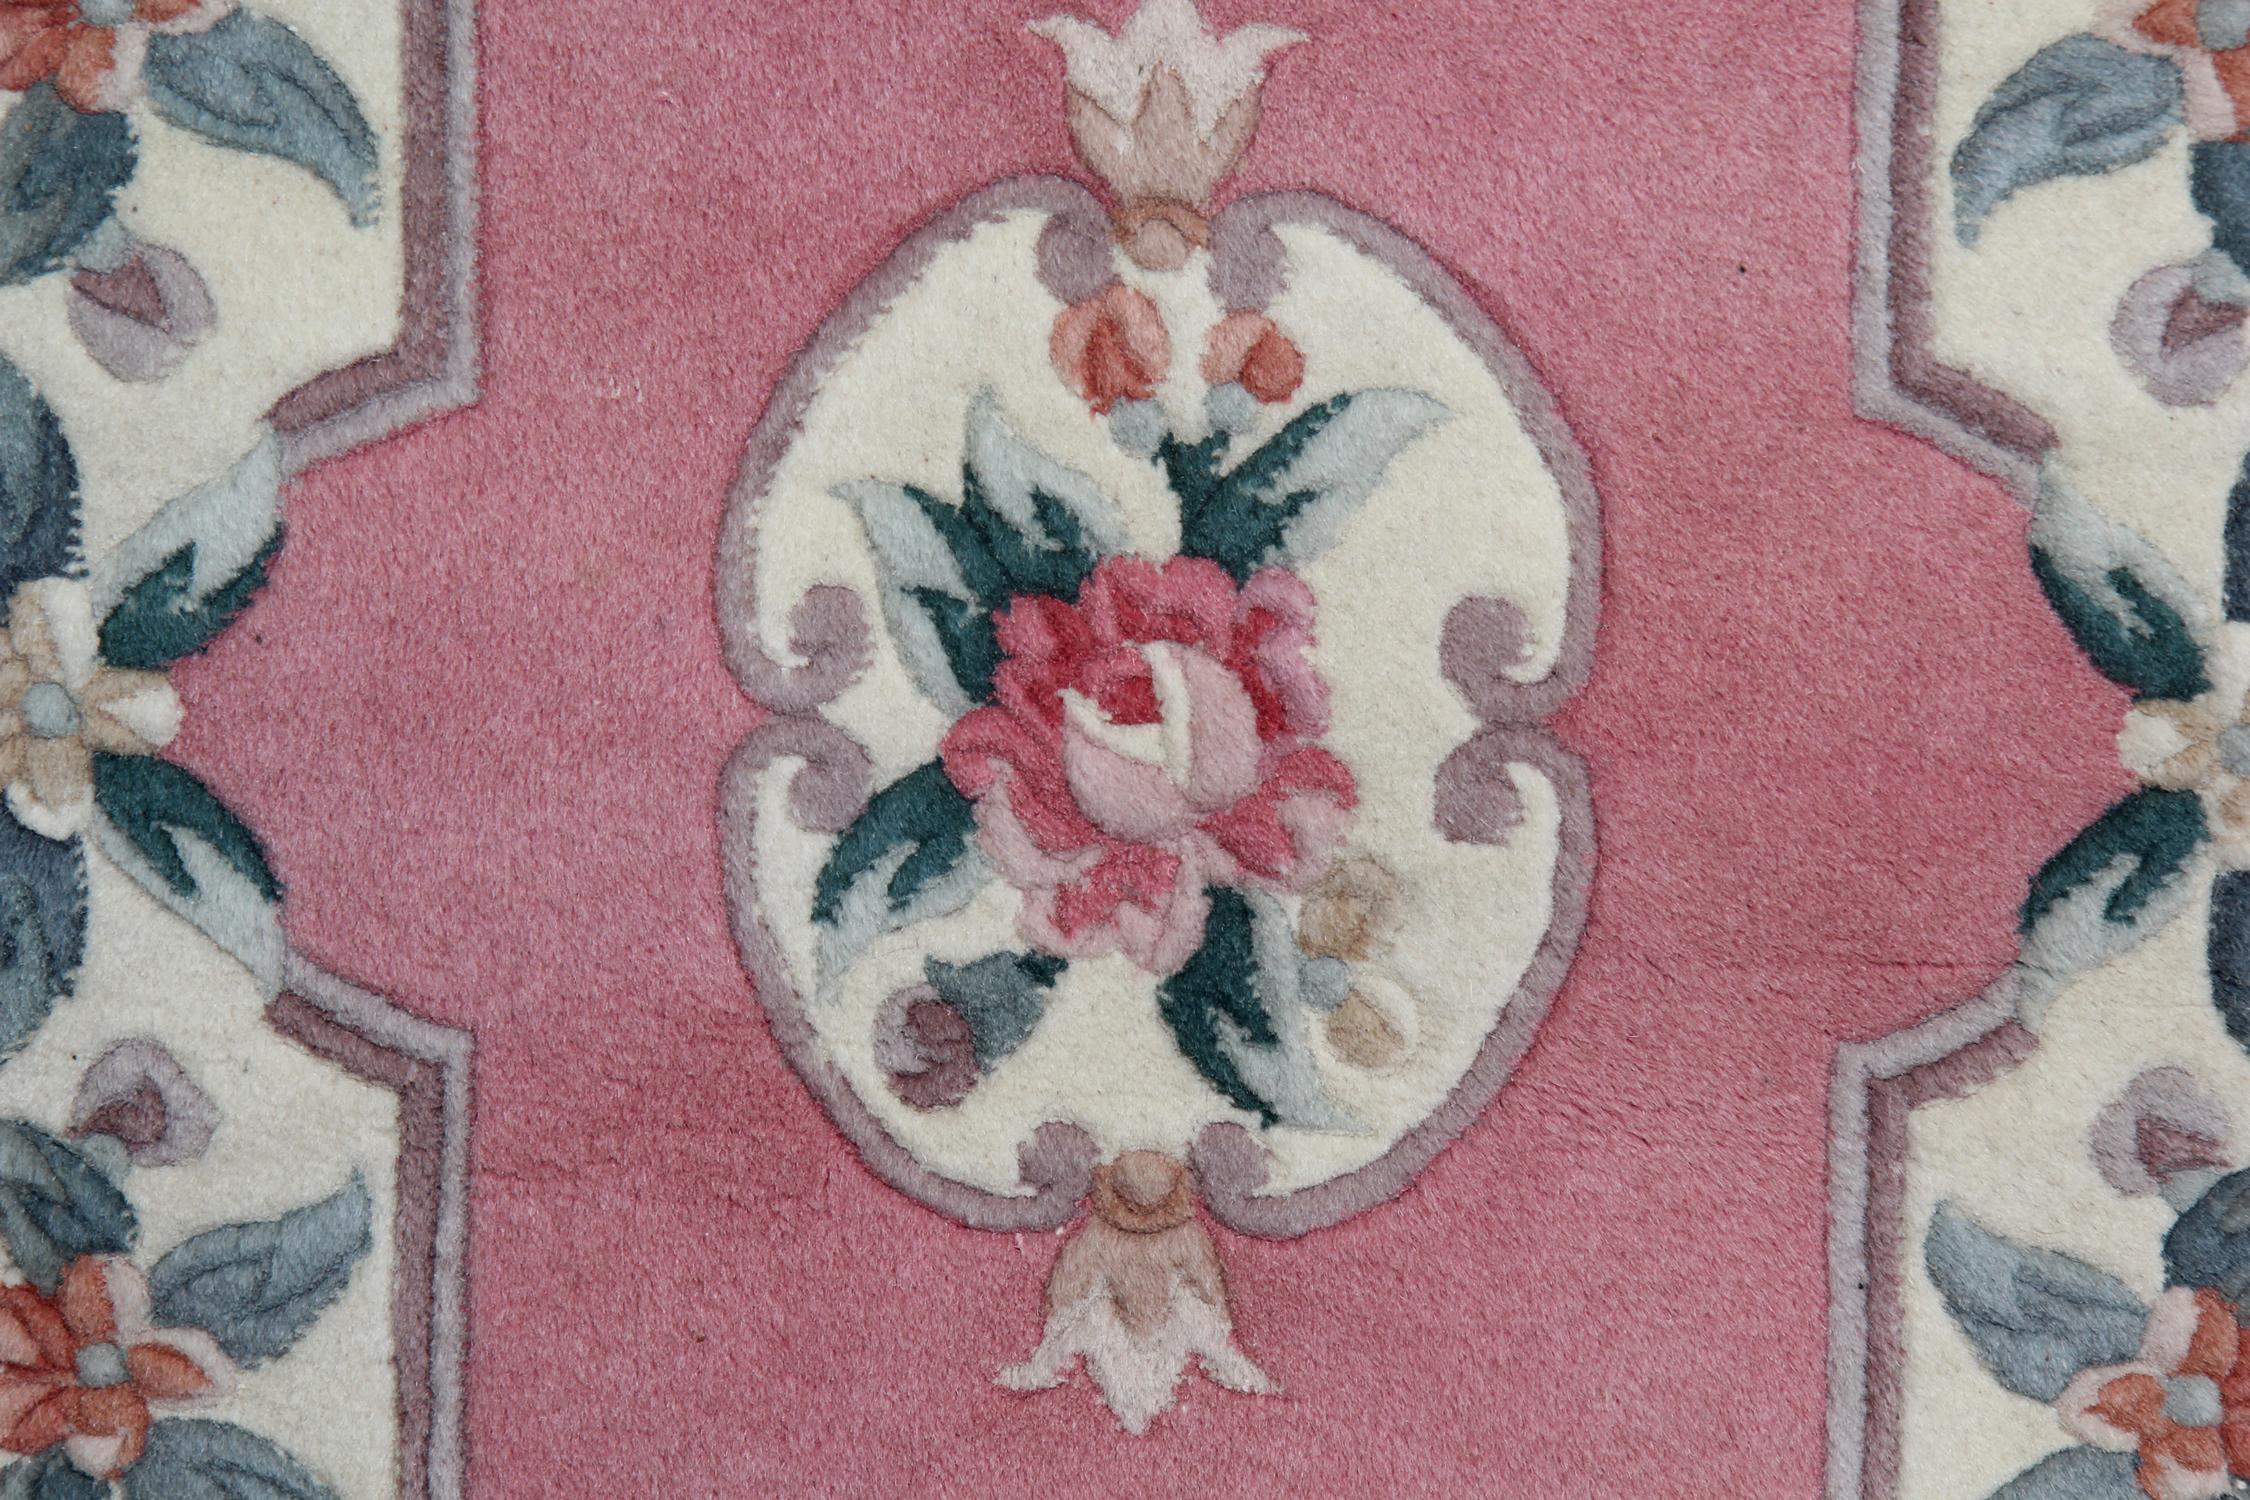 Dieser elegante handgefertigte Teppich wurde in den 1990er Jahren in China hergestellt. Das zentrale Muster wurde auf einem rosafarbenen Feld mit pfirsichfarbenen, lilafarbenen und grünen Akzenten gewebt, die das florale Medaillon und das